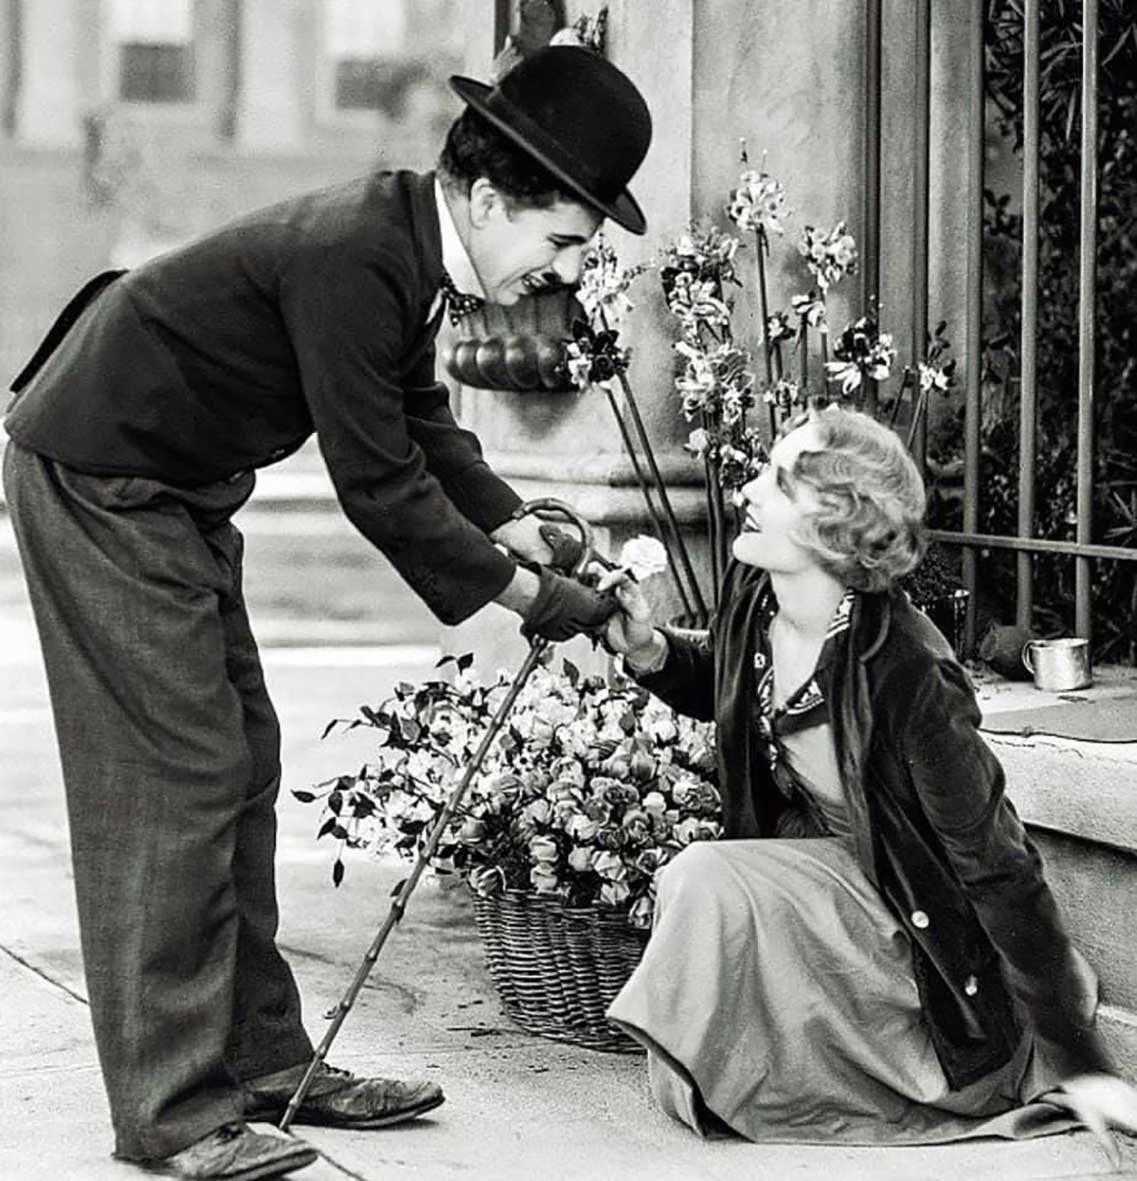 L'amore è un magnifico fiore che bisogna avere il coraggio di raccogliere sul bordo di un terribile precipizio Stendhal #NatiOggi #23gennaio Luci della città Charlie Chaplin